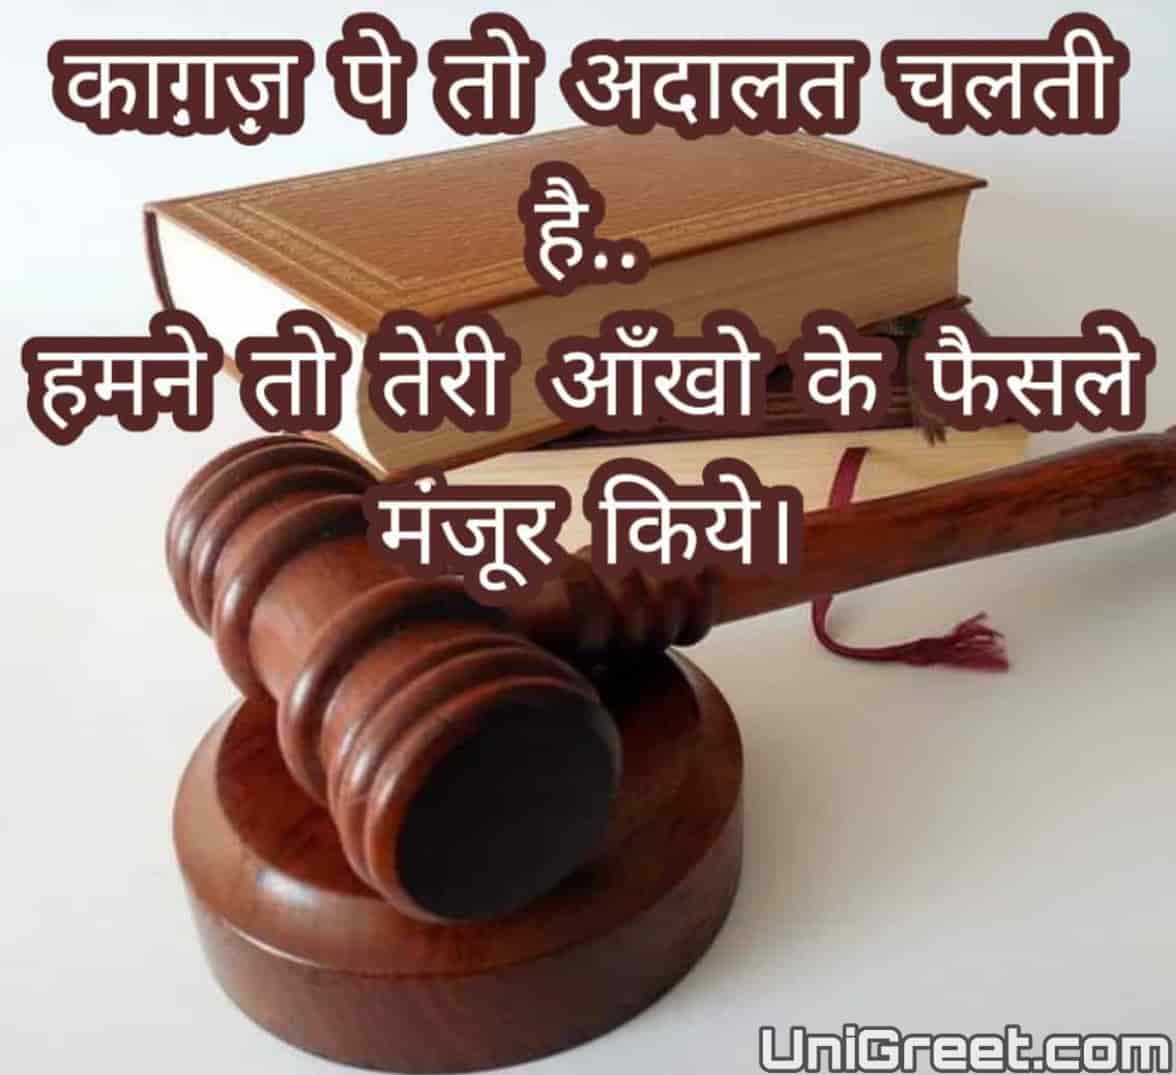 Divorce status quotes in hindi